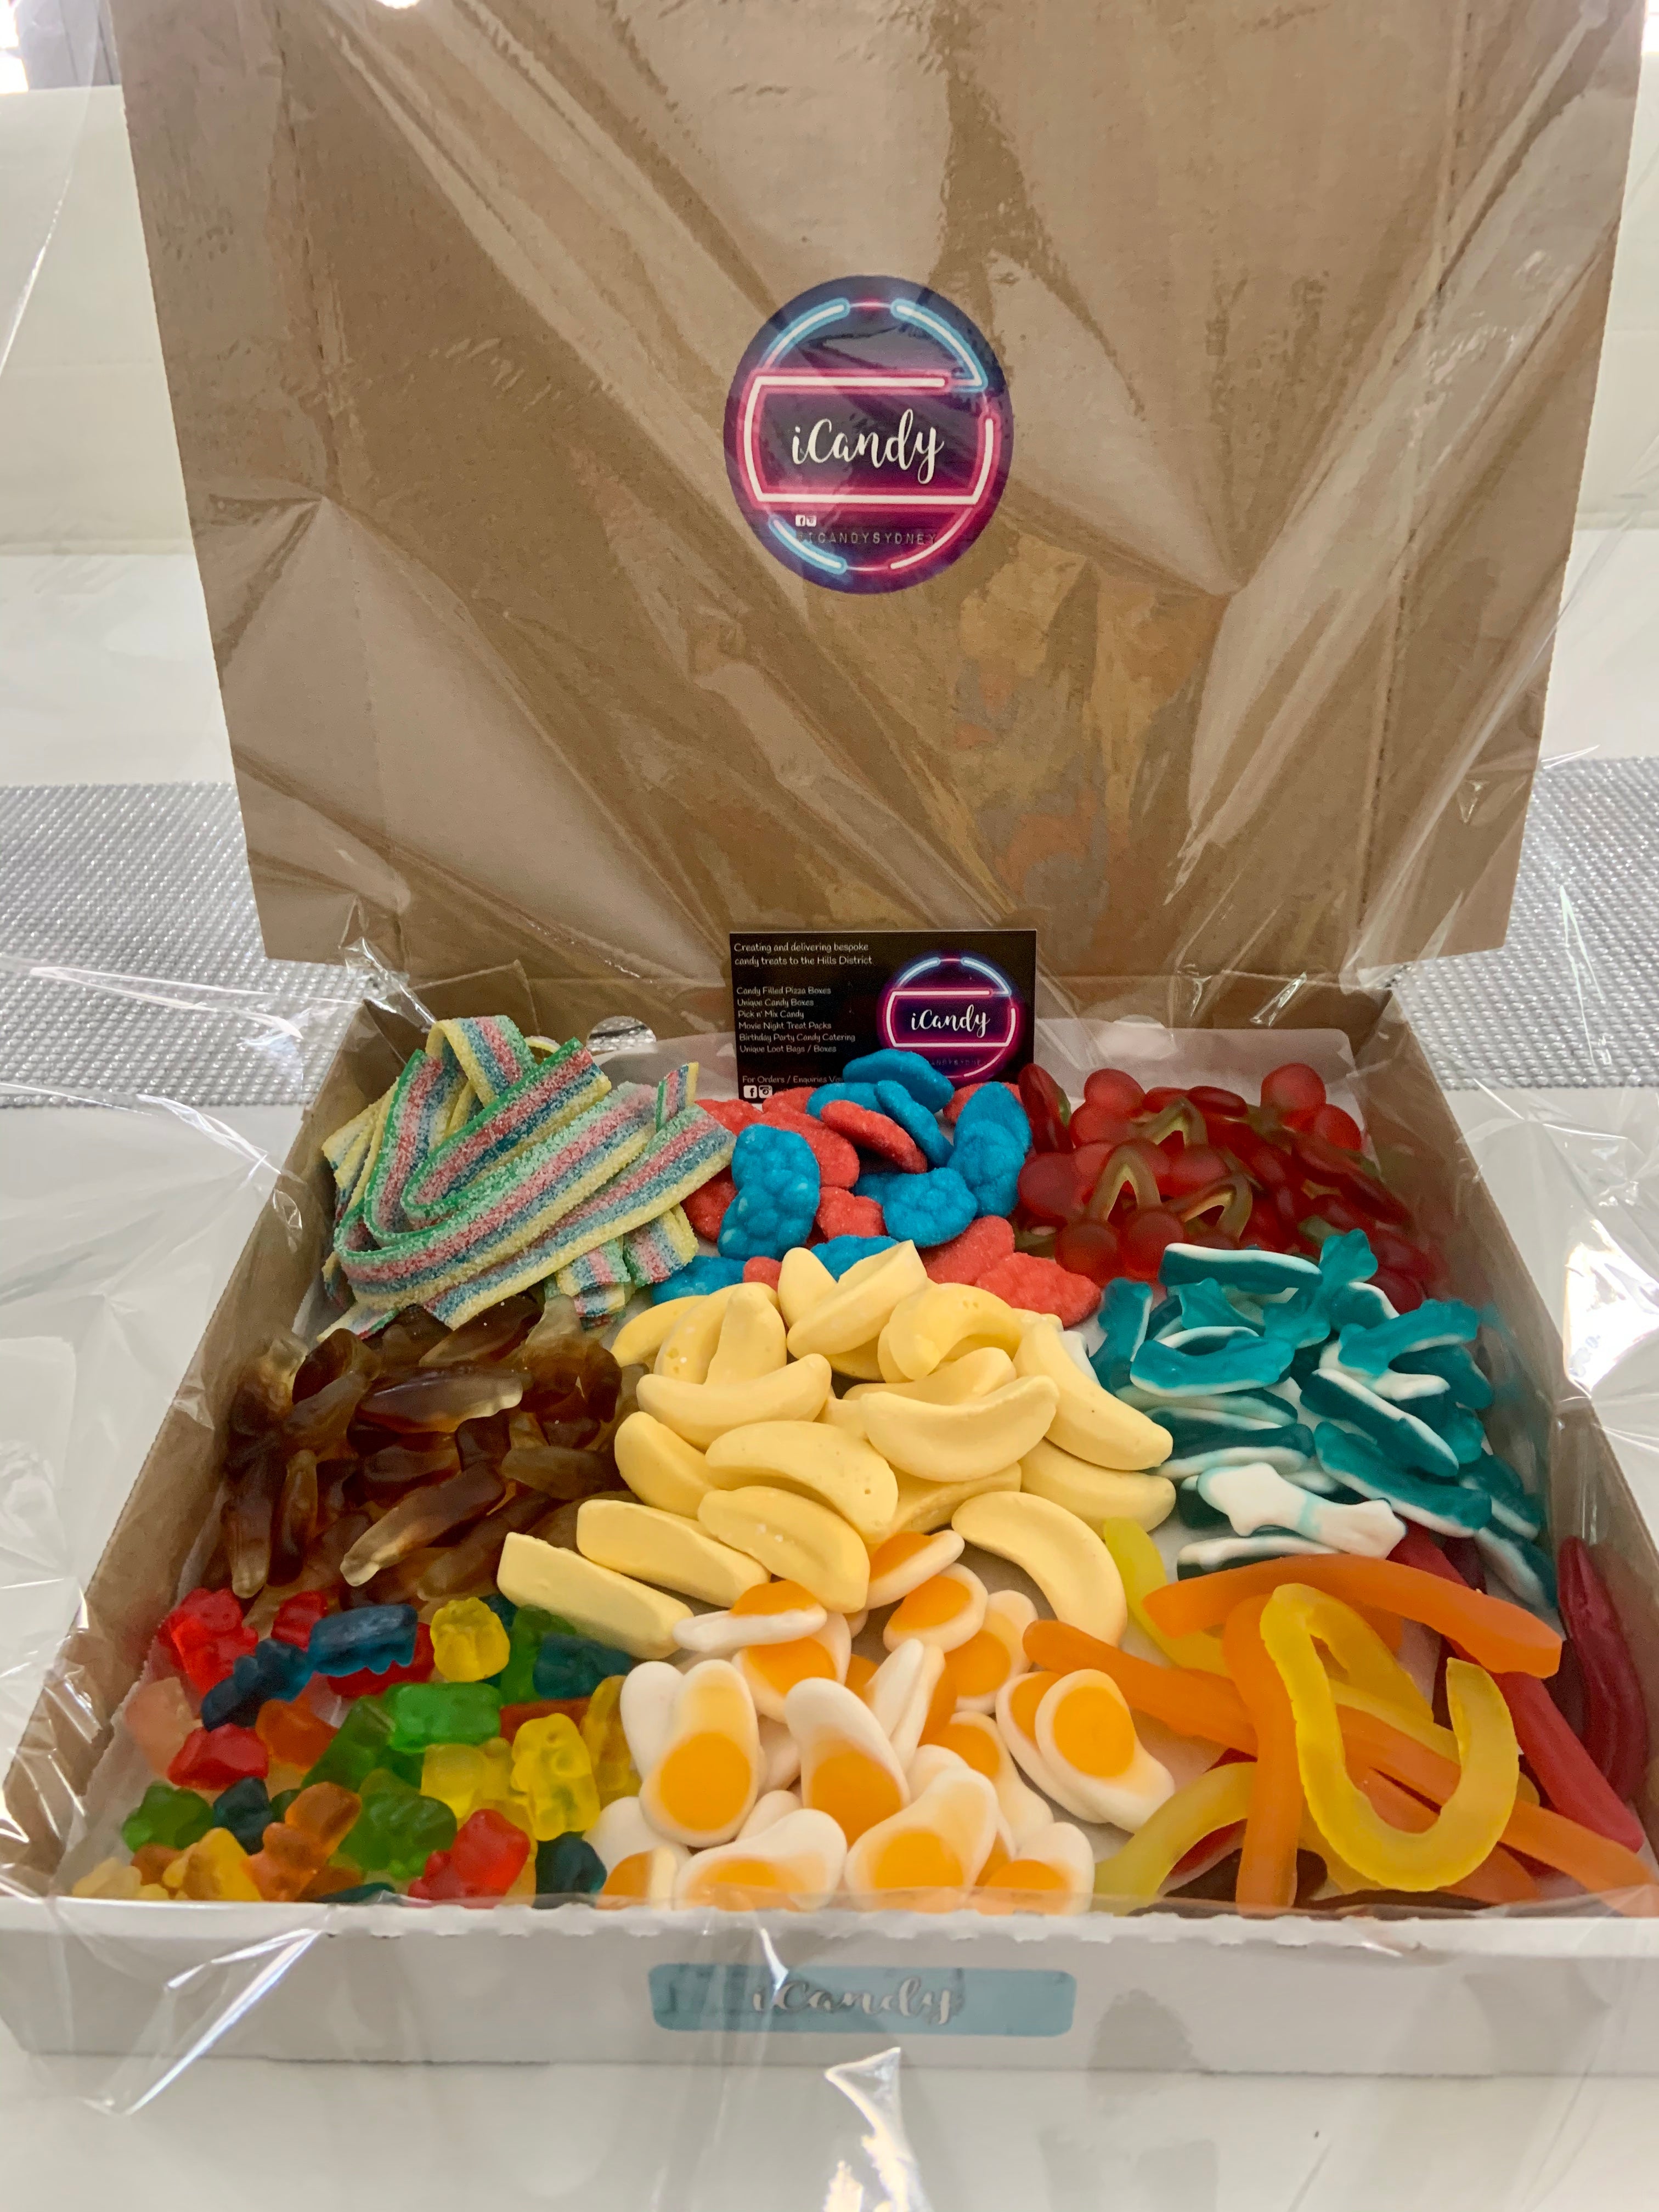 Pick & Mix Candy Boxes – iCandySydney